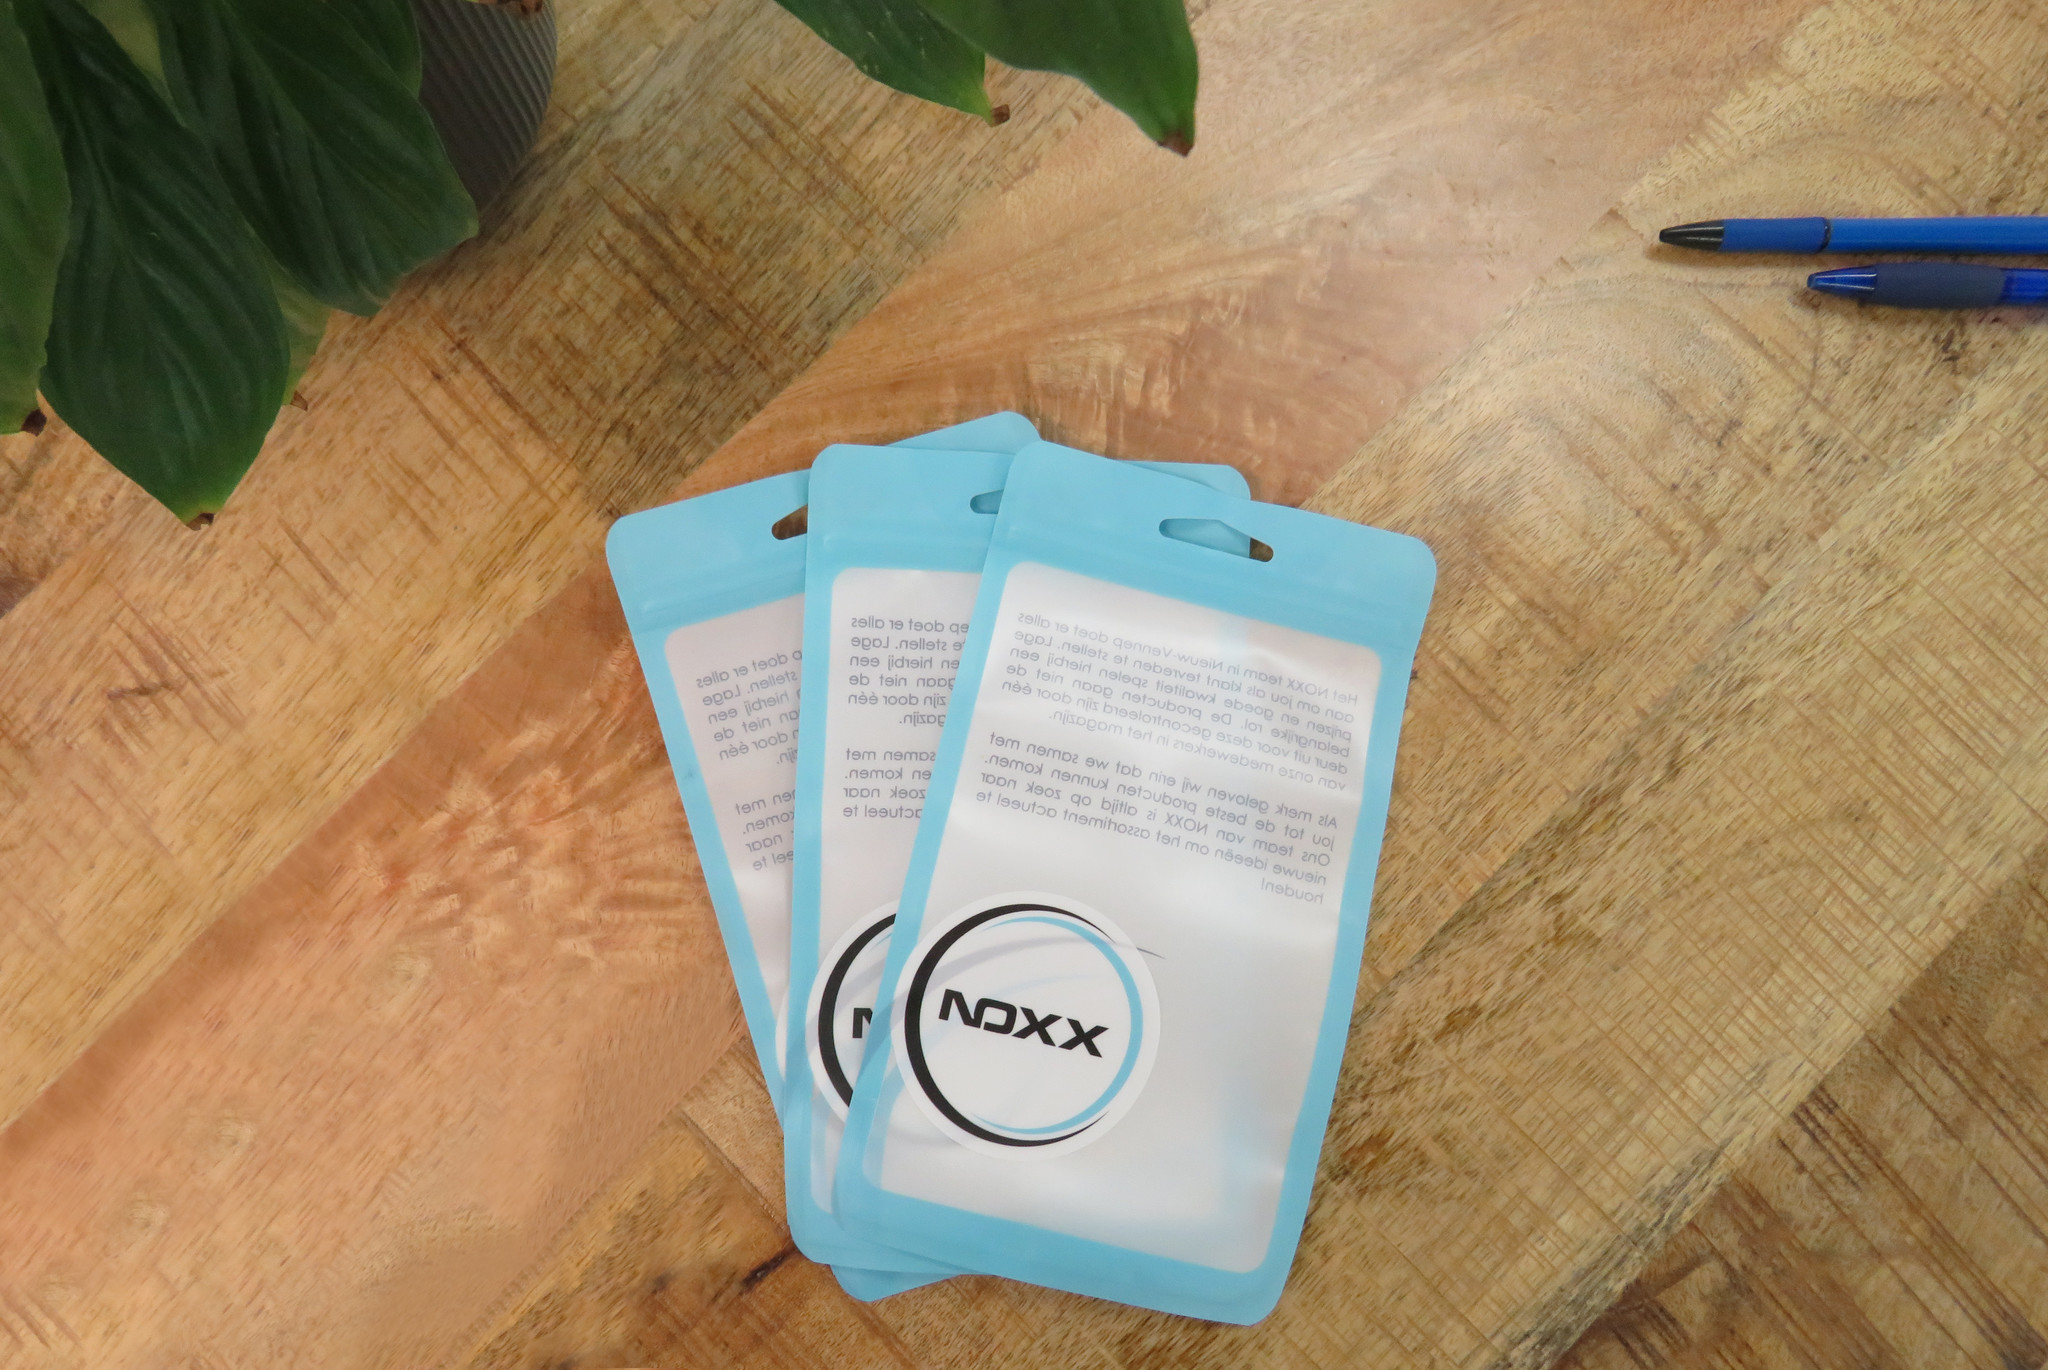 NoXx Hoes Geschikt voor OPPO A57s Hoesje Book Case Hoes Flip Cover Wallet Bookcase - Rosé goud